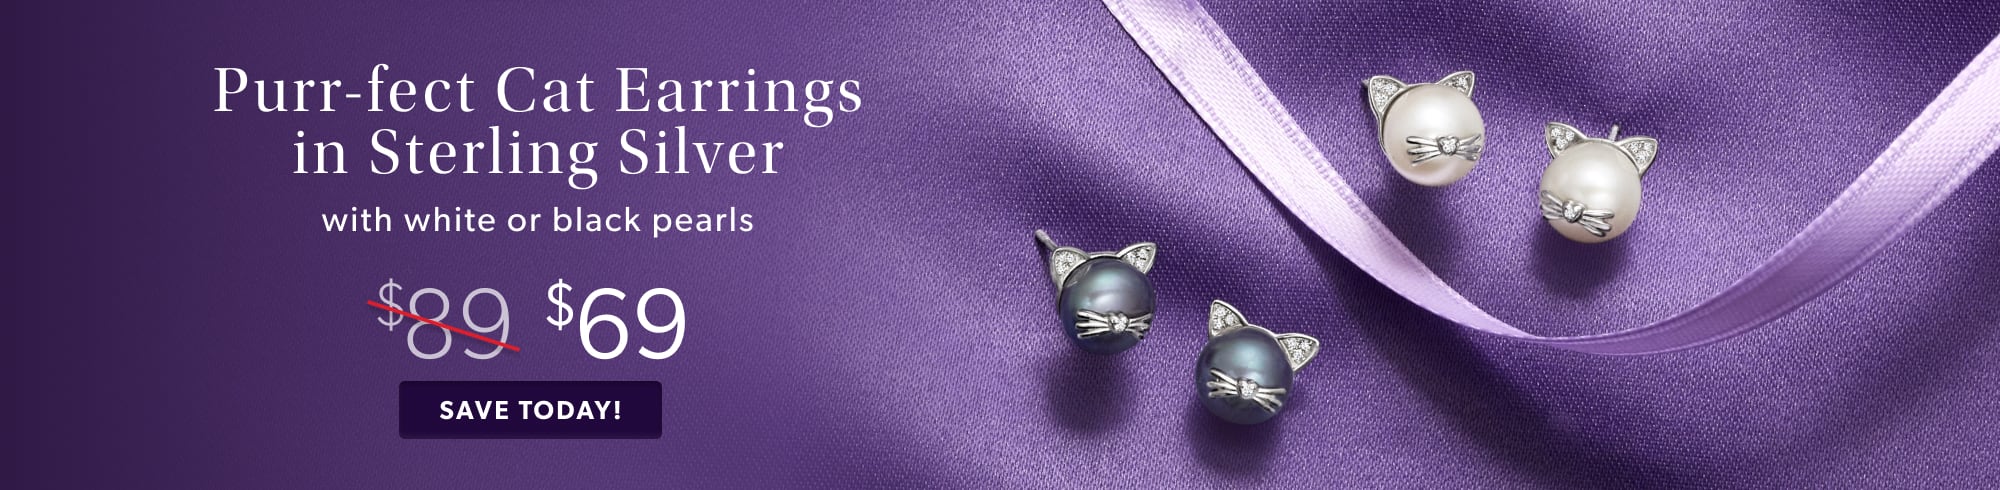 Purr-fect Cat Earrings in Sterling Silver